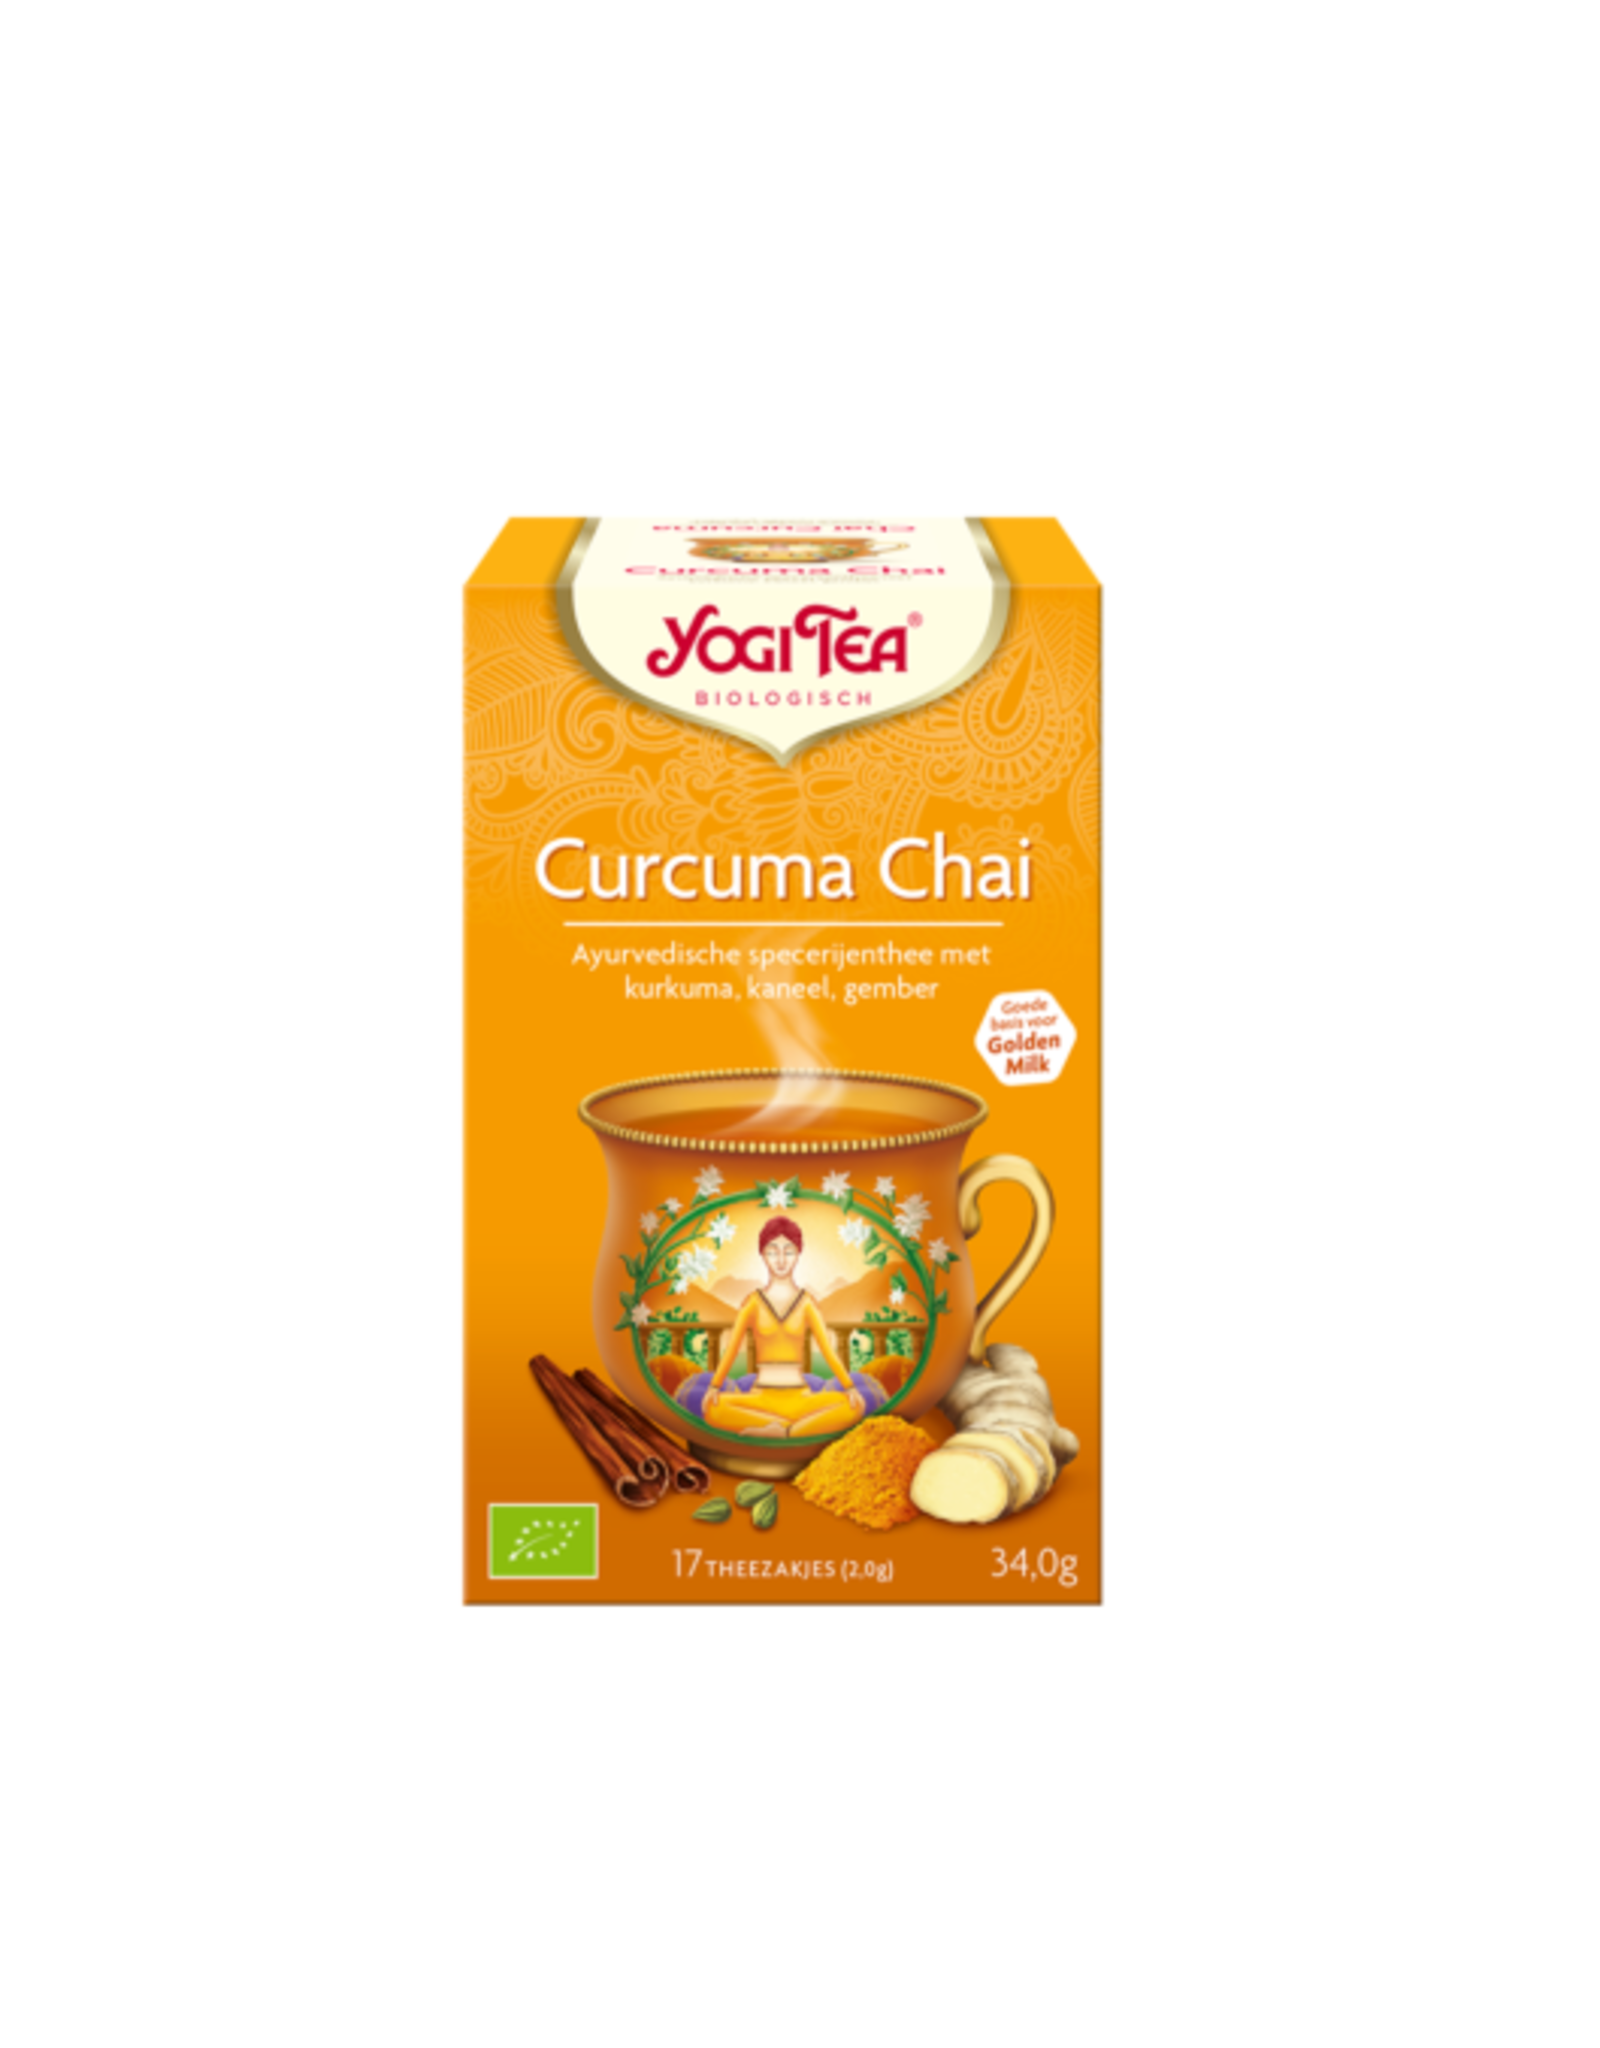 Yogi Tea Curcuma Chai